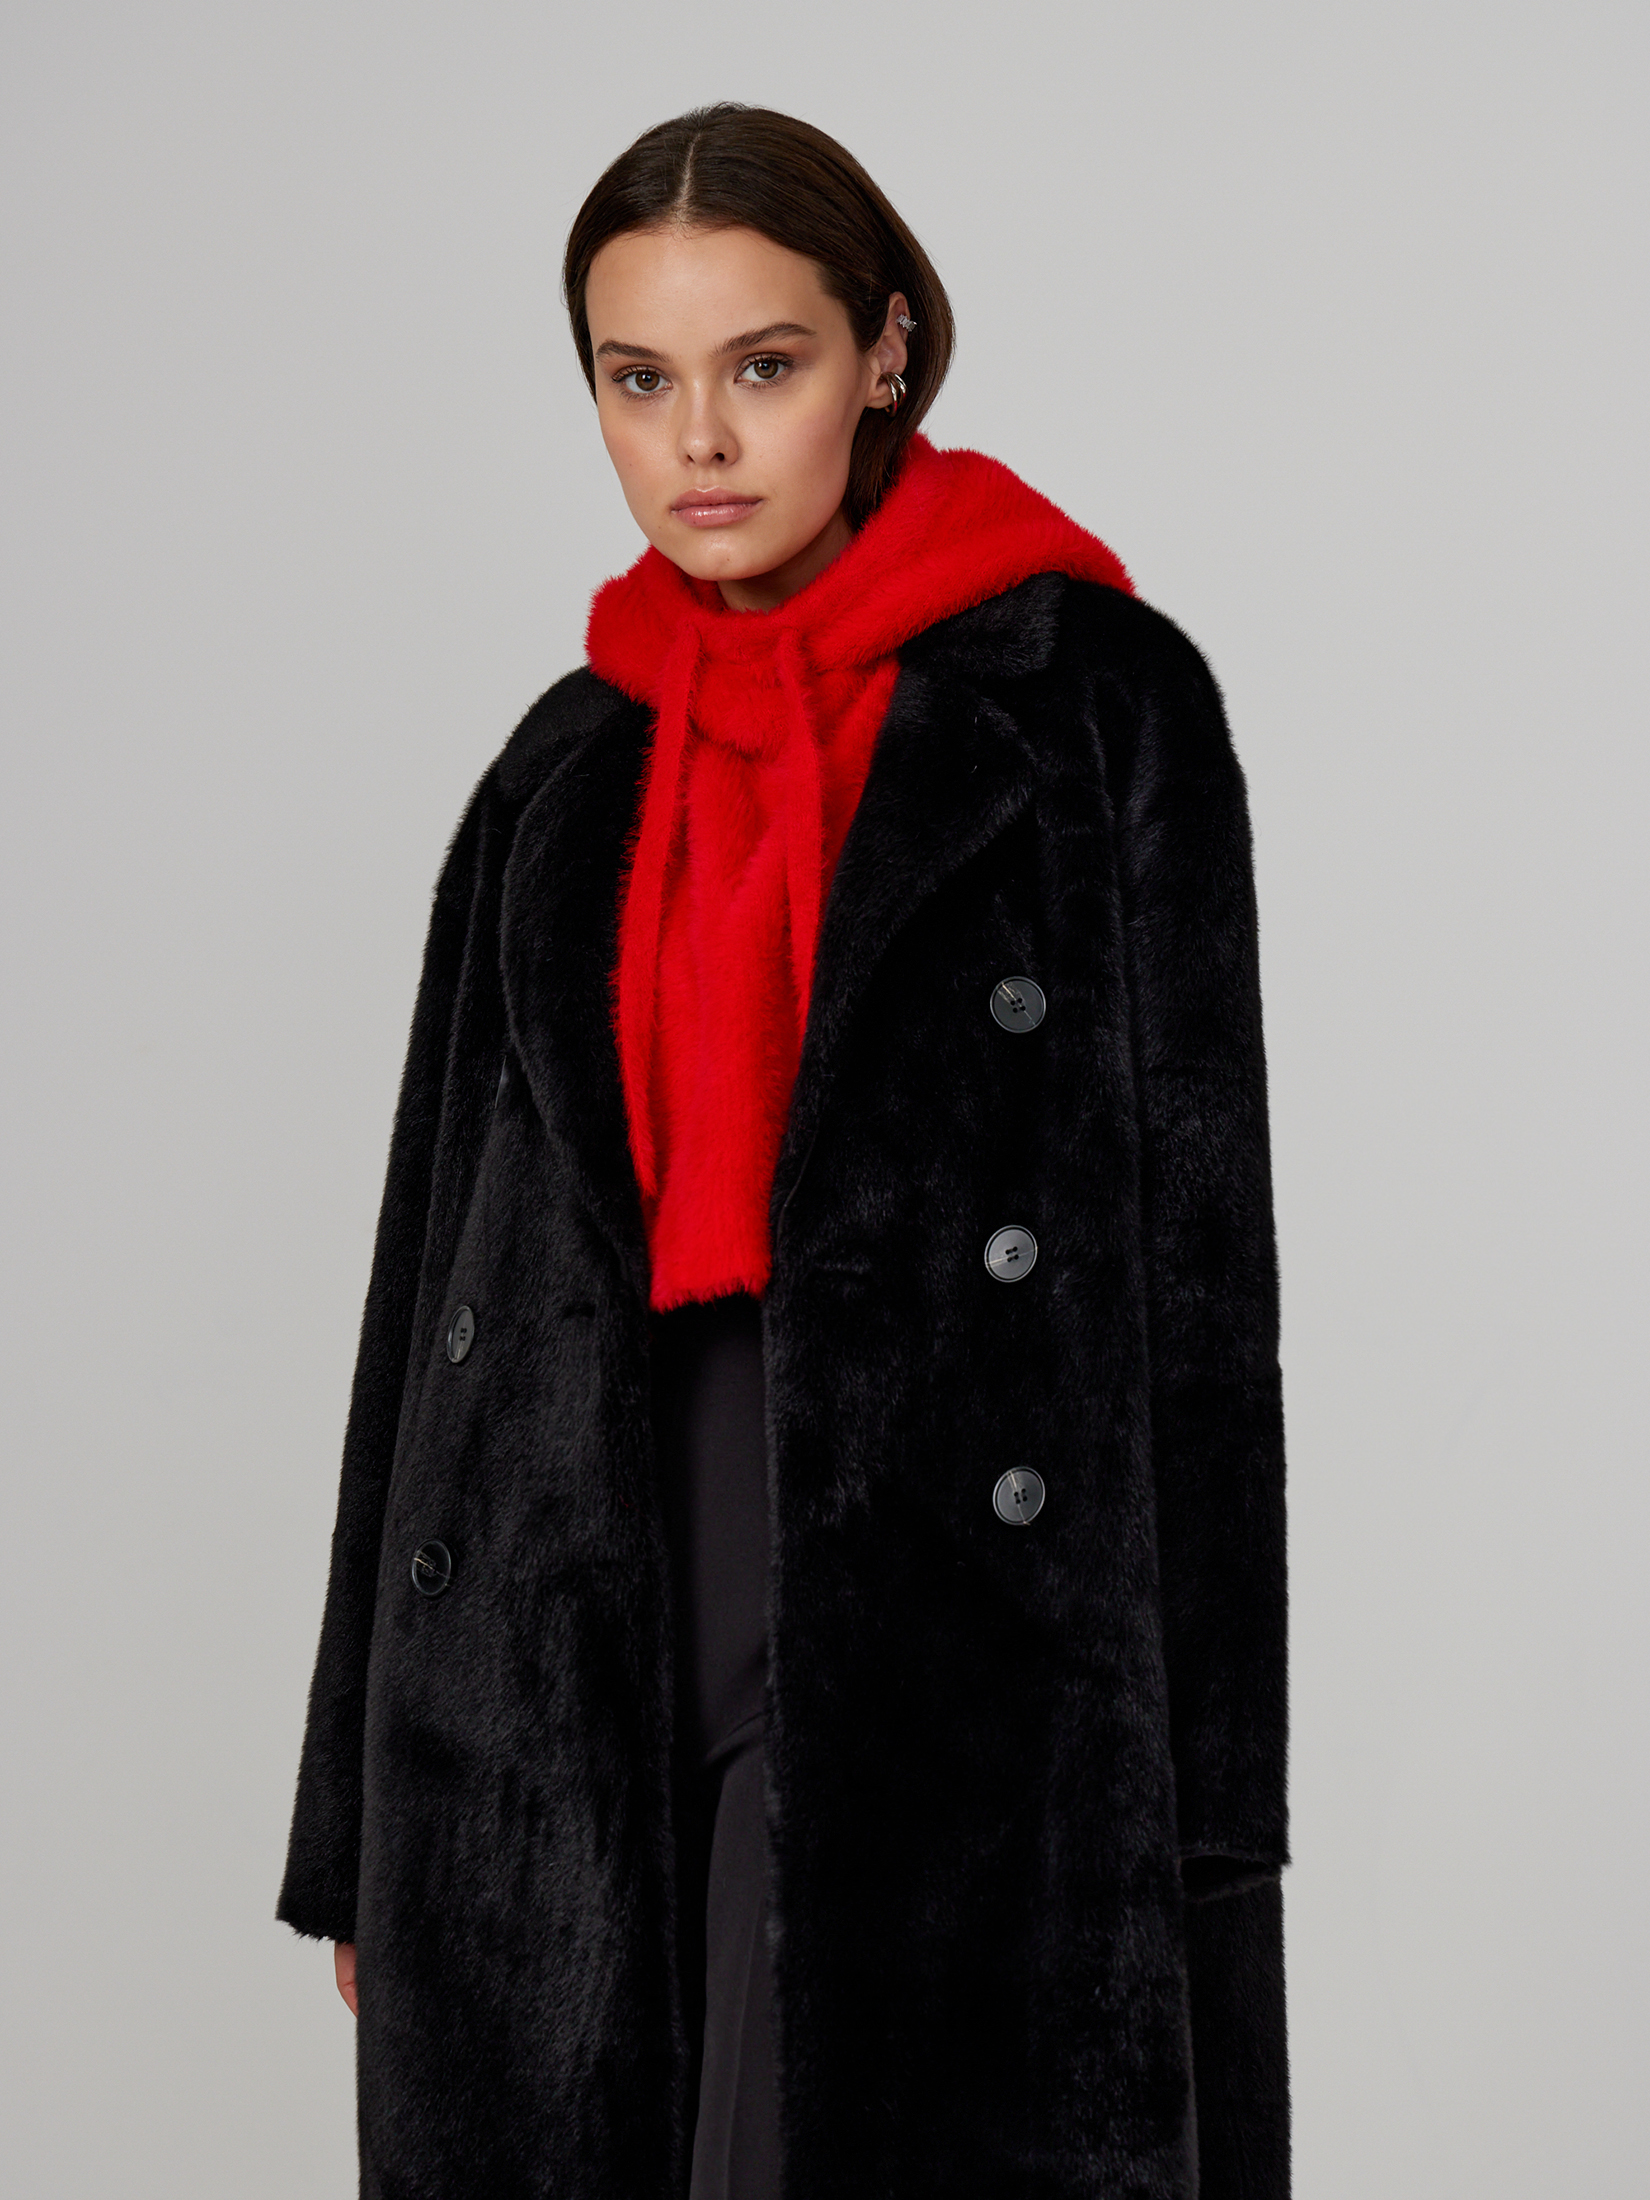 Пальто женское черное пальто сезон стиля размер 158 46 желтый